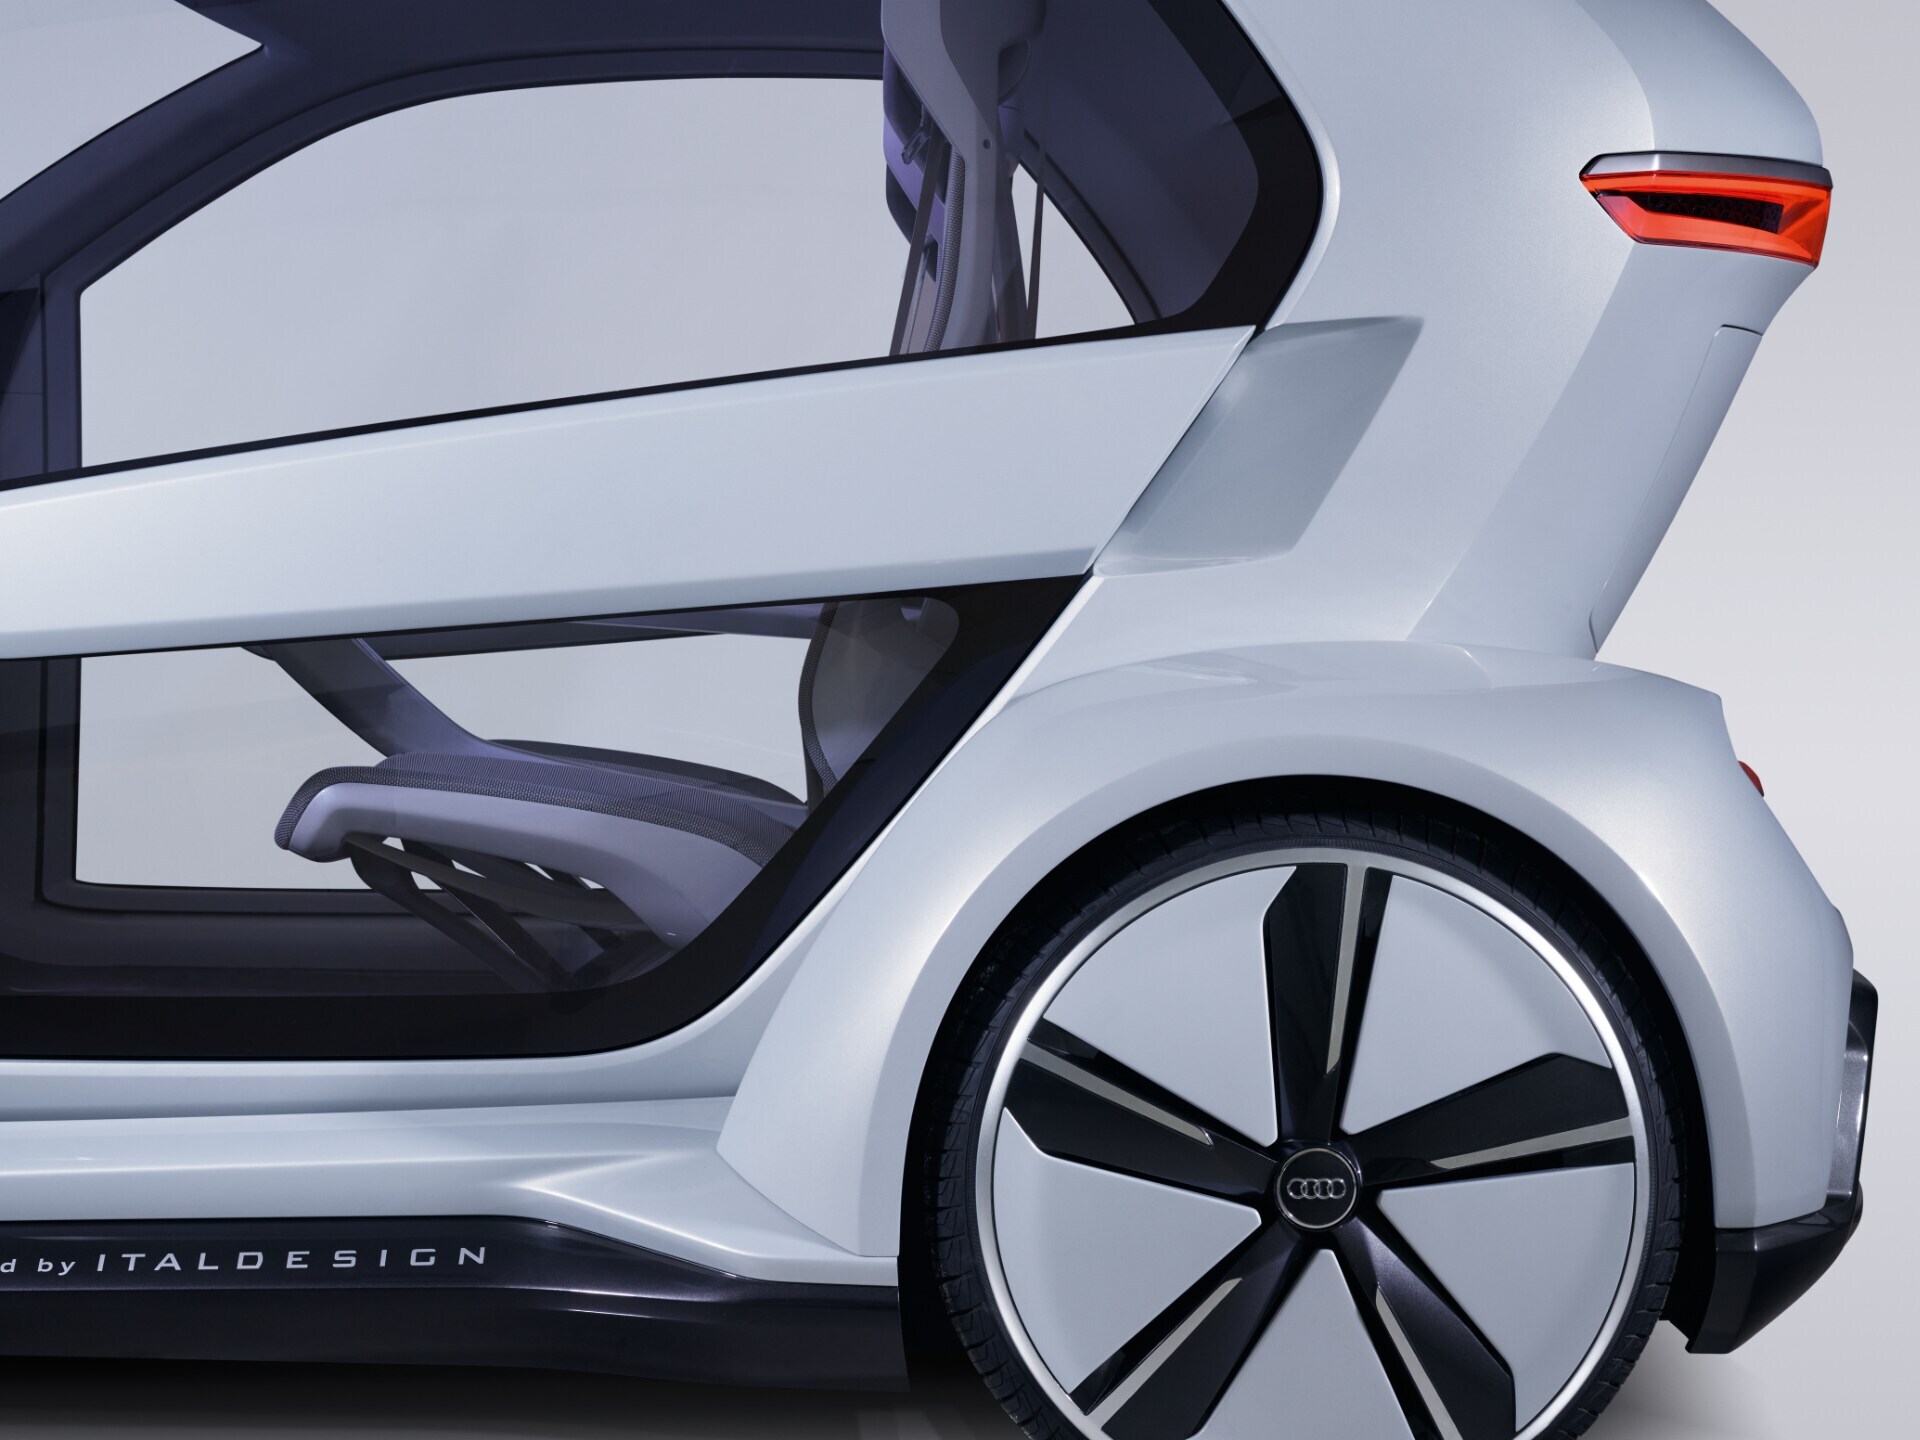 Audijevo konceptno vozilo Pop.Up Next 